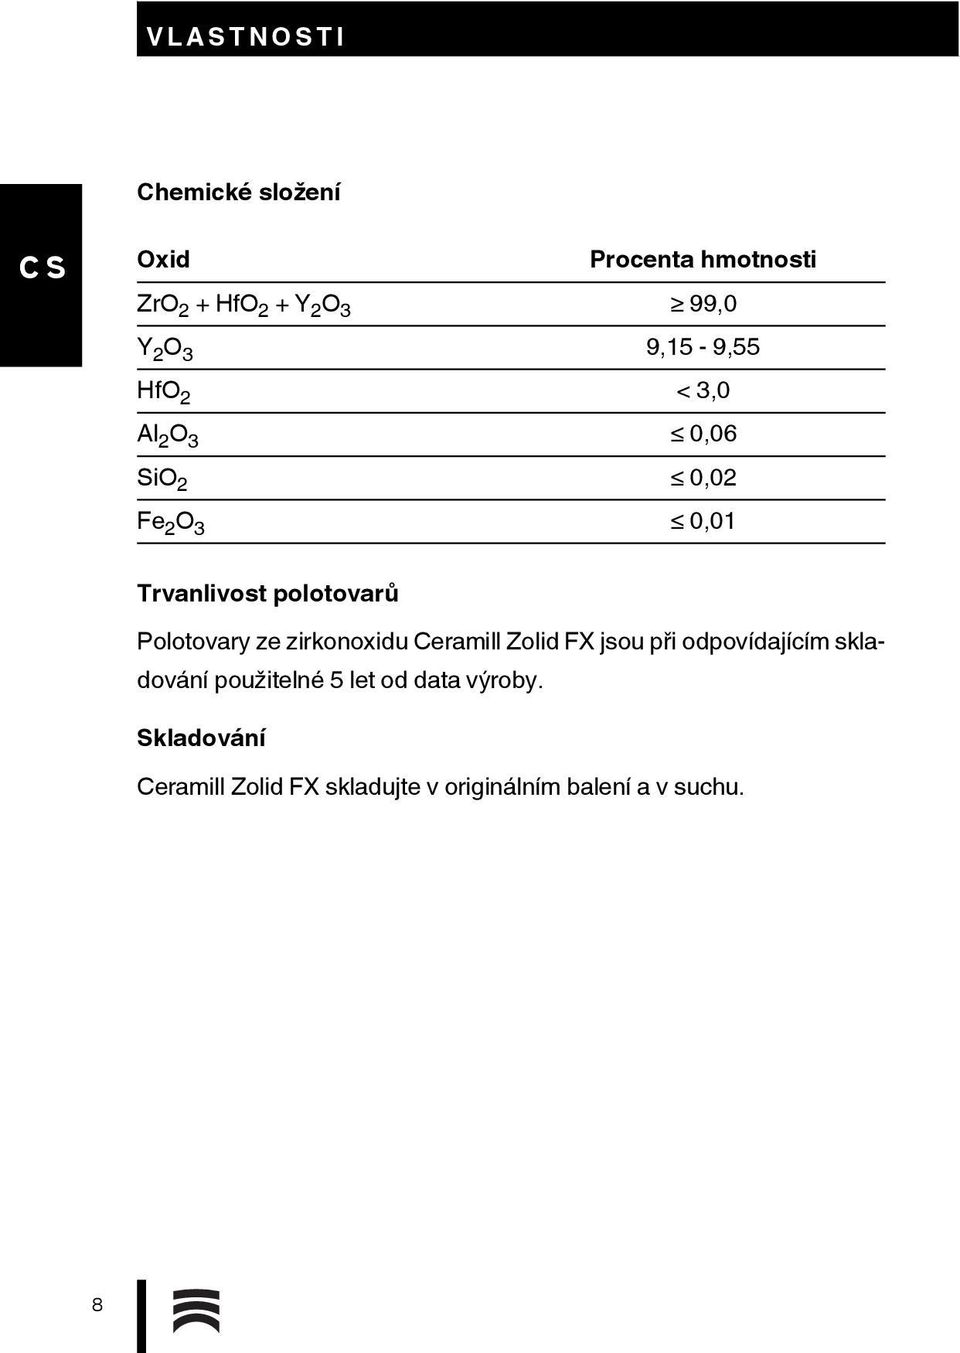 Polotovary ze zirkonoxidu Ceramill Zolid FX jsou při odpovídajícím skladování použitelné